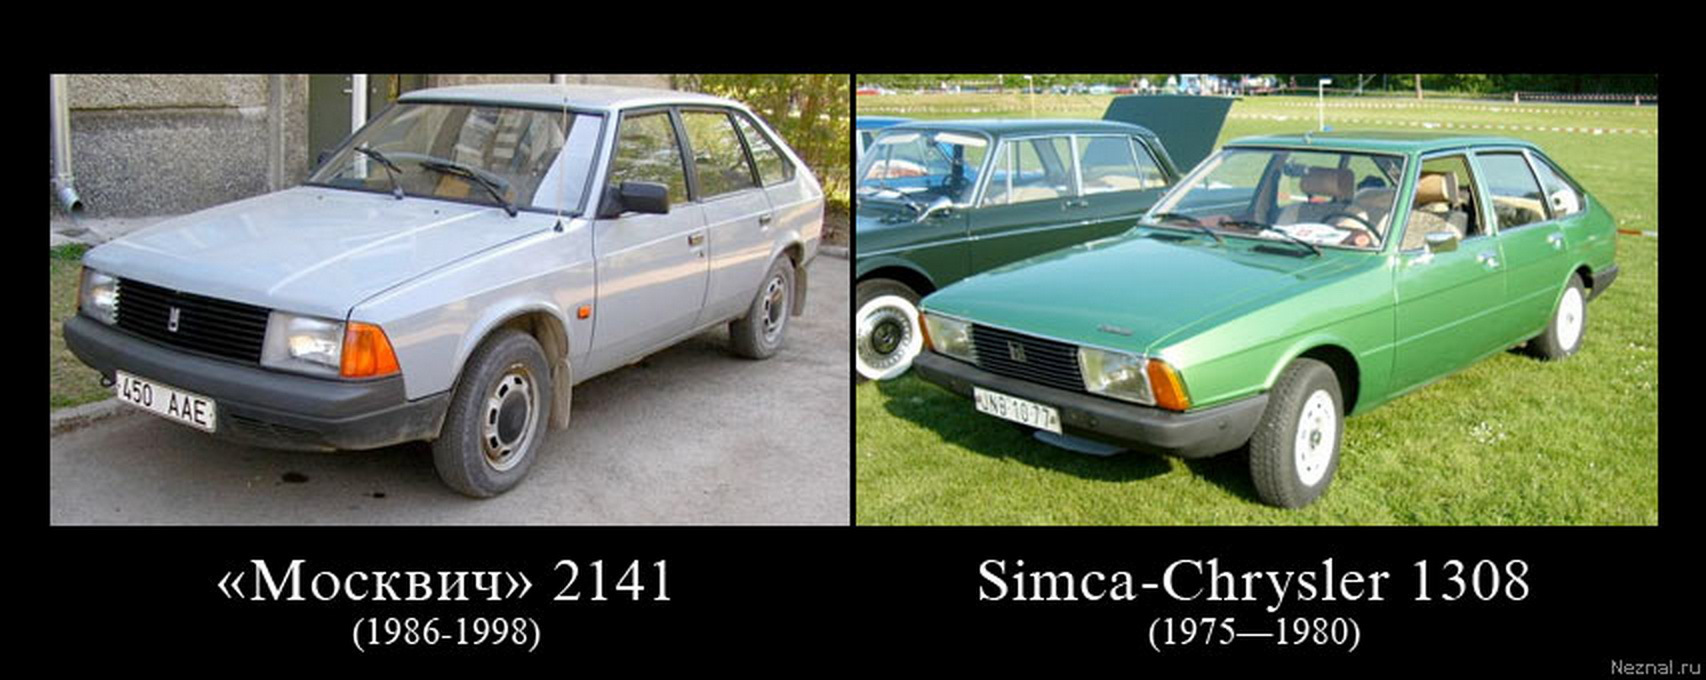 Советский плагиат. Москвич 2141 это копия. Советский автомобиль Москвич 2141. Машина похожая на Москвич 2141.